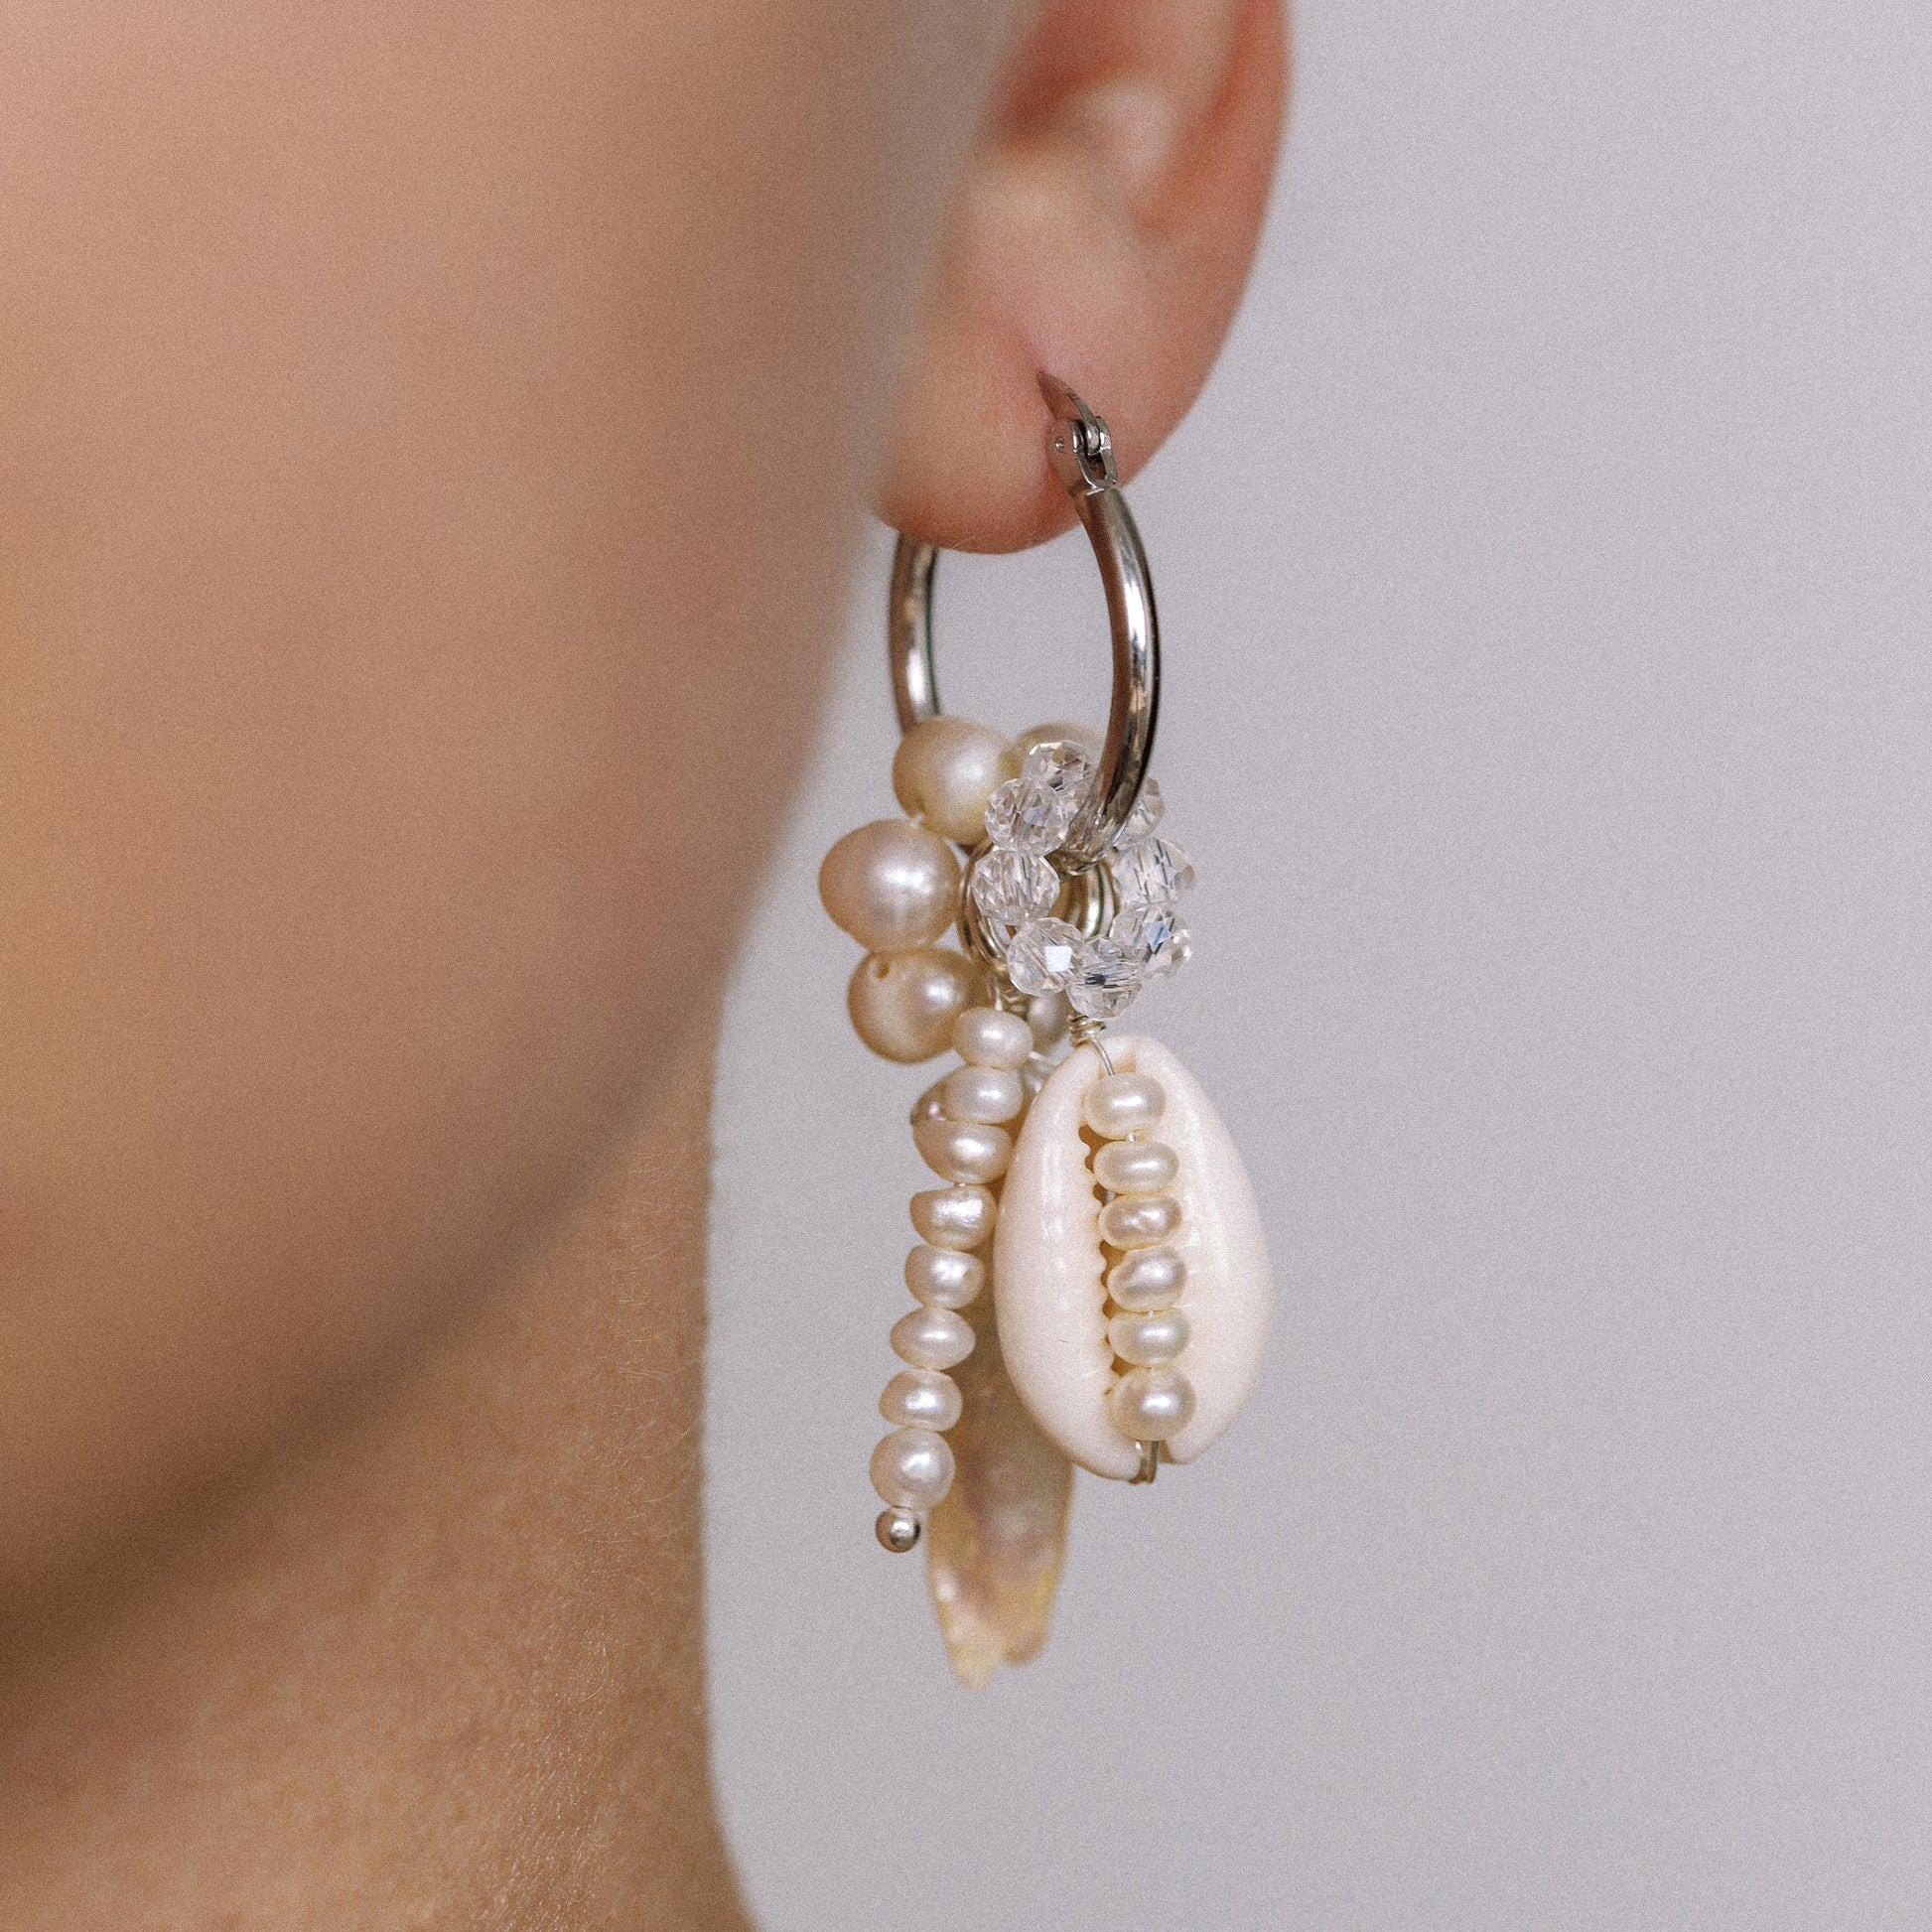 Sterling Silver Hoop Earrings with Fresh-Water Pearls and Shells • Gorgeous Pearl Hoop Earrings, Freshwater Pearl Earrings • BYSDMJEWELS